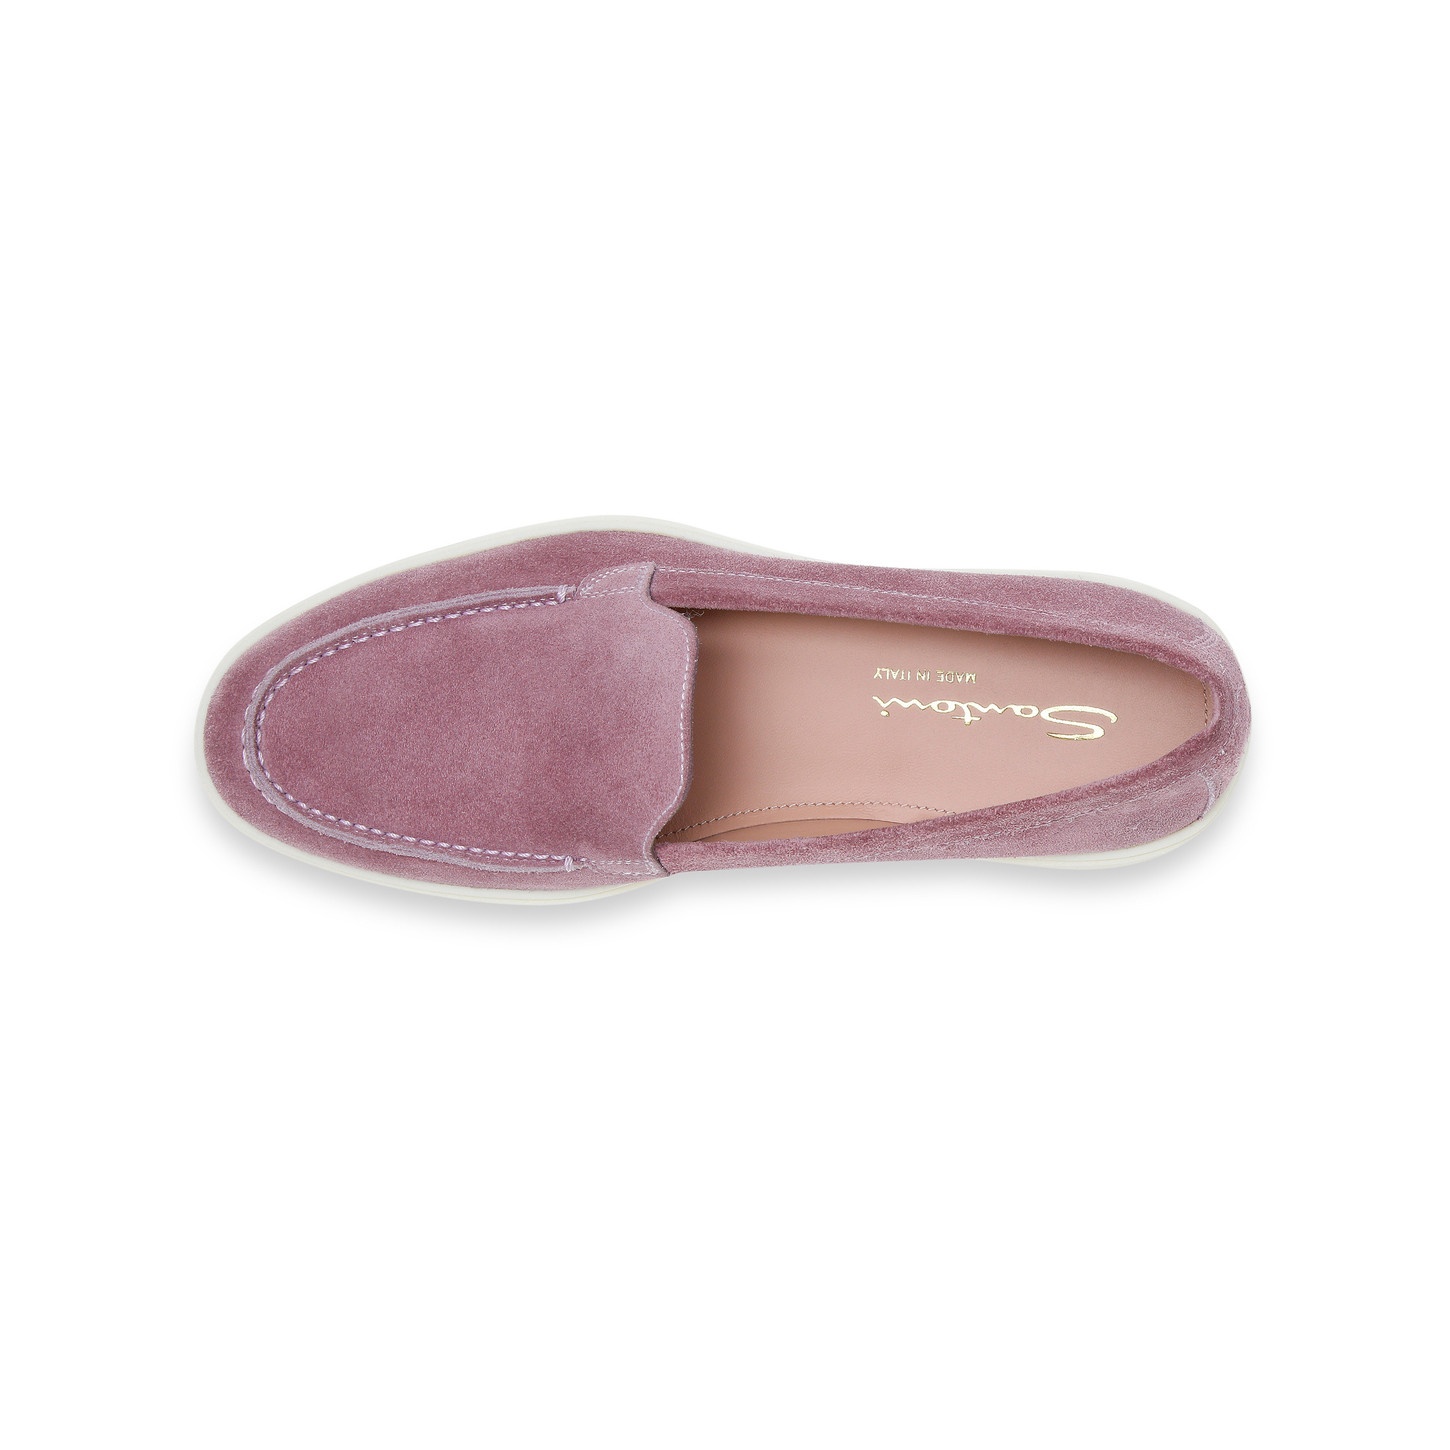 Women's purple suede loafer - 5